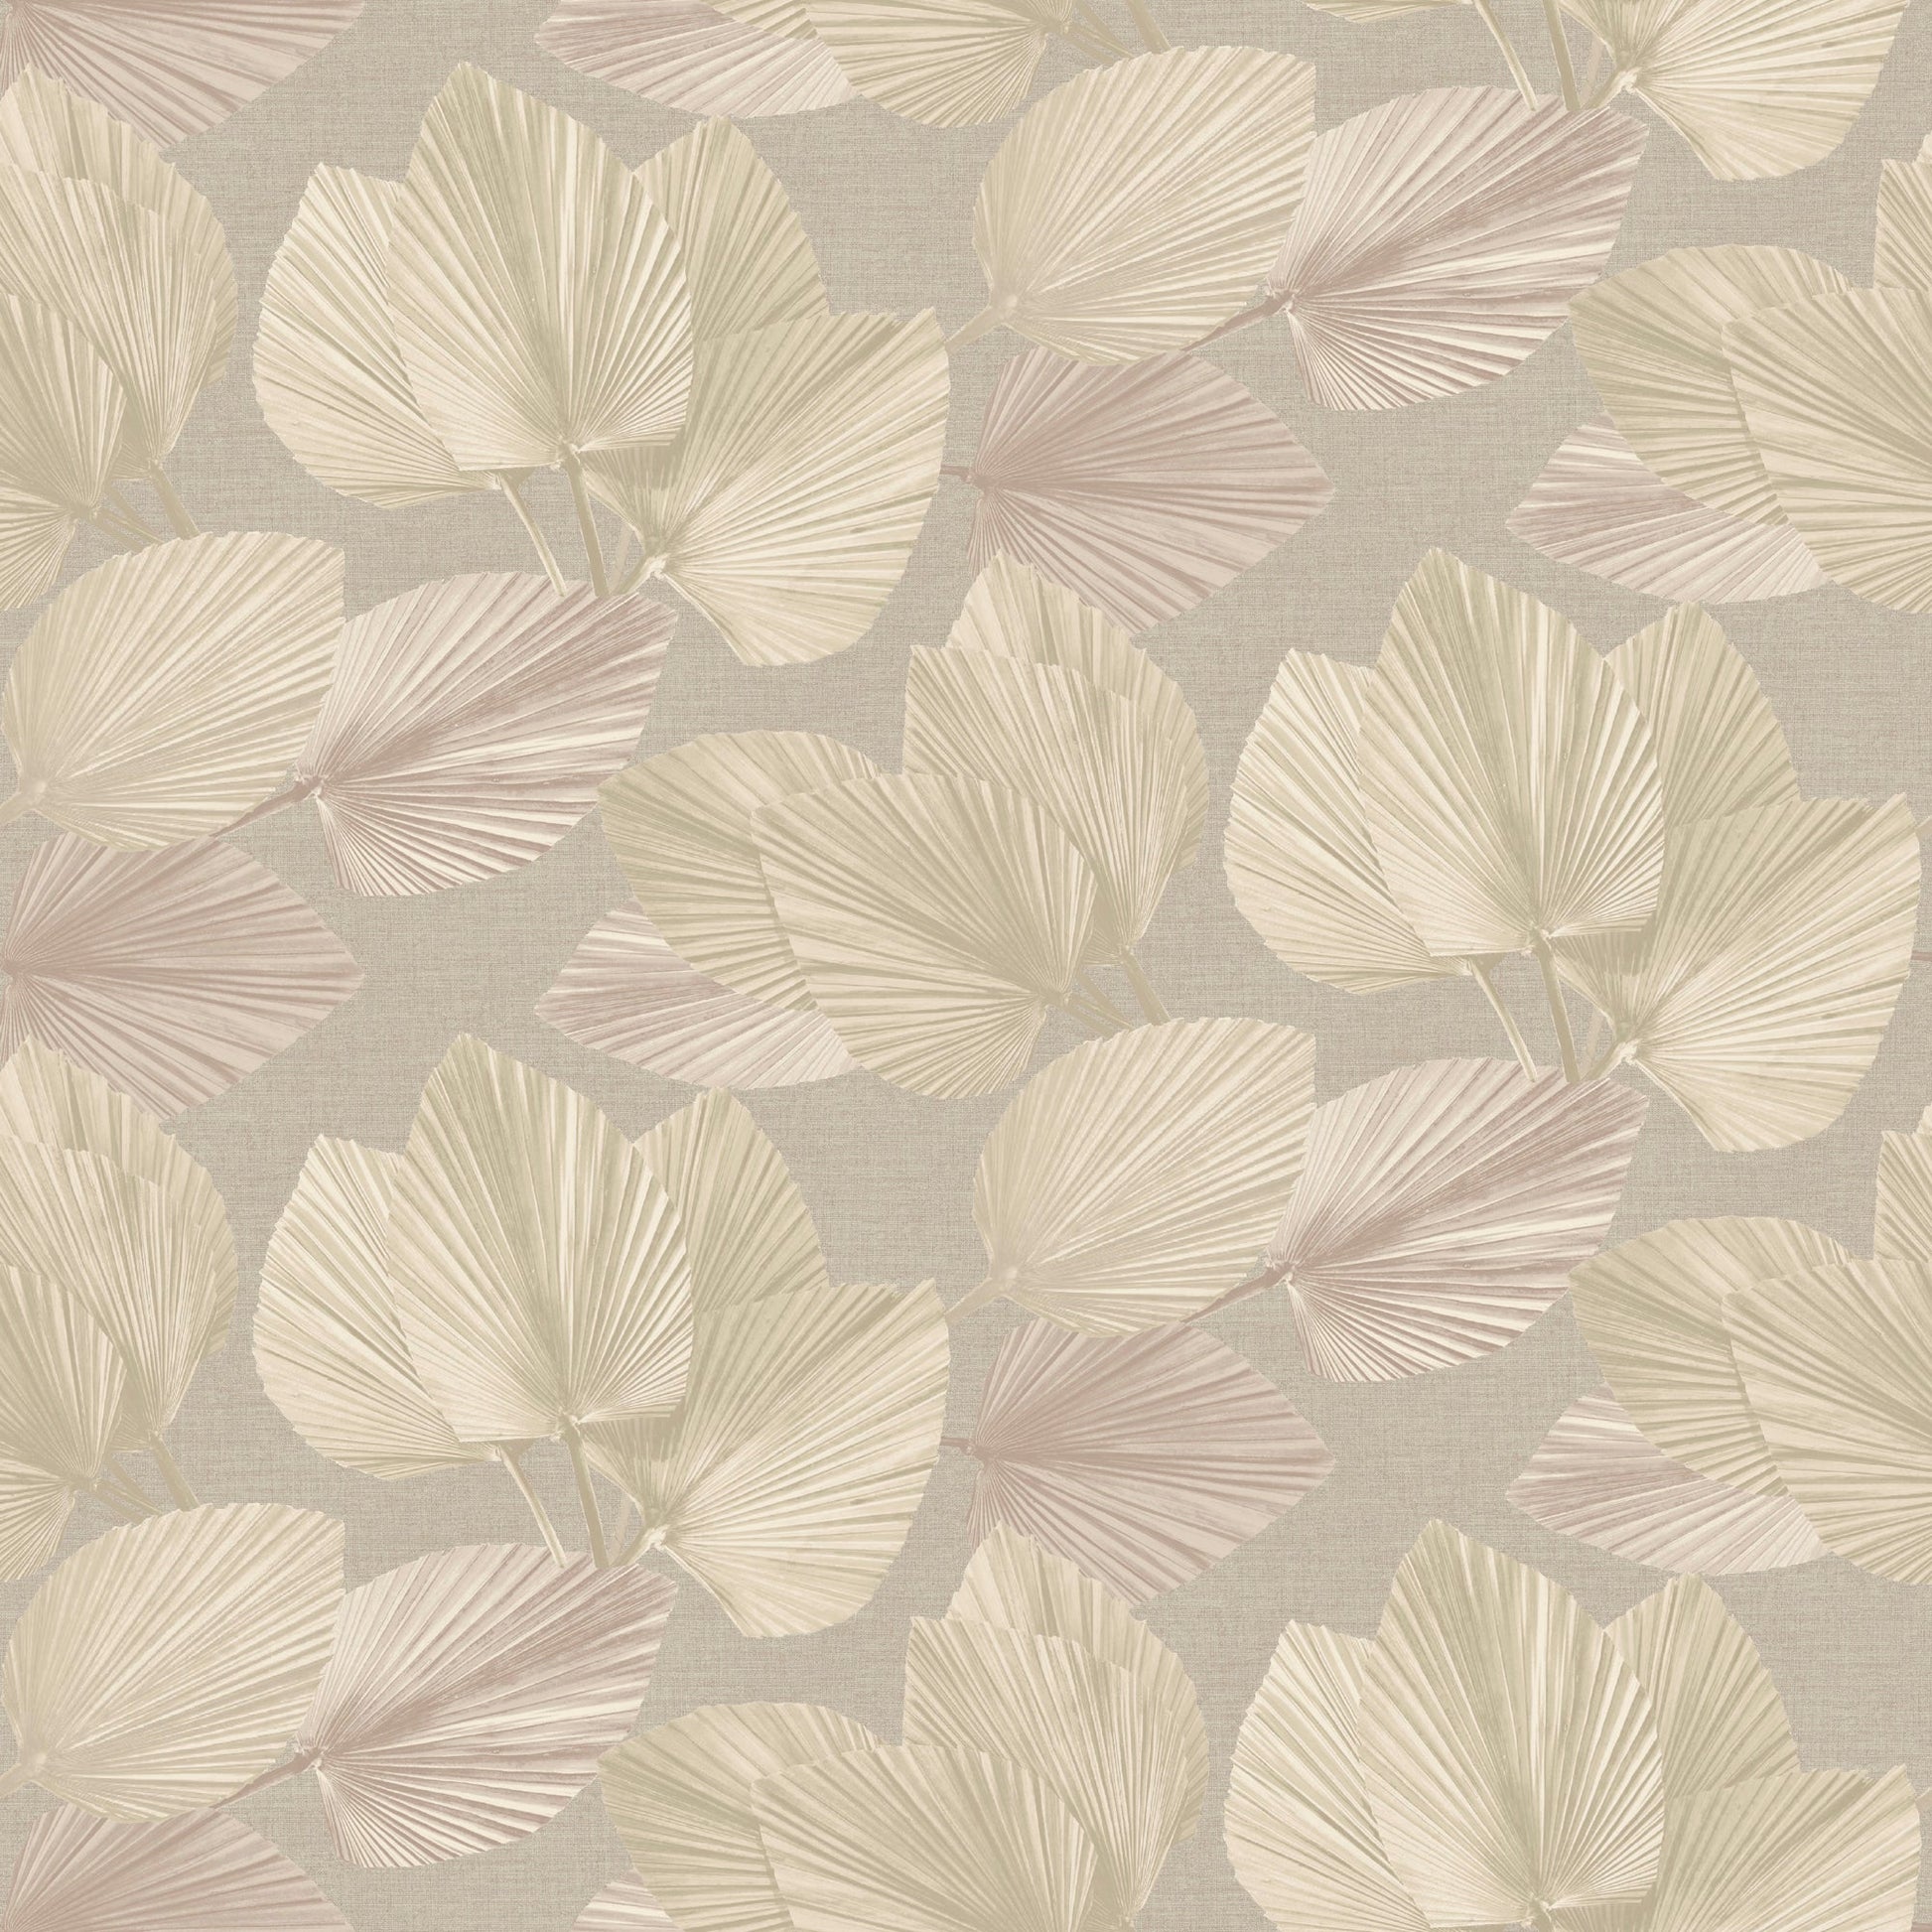 Purchase JF Wallpaper Item# 8235 41W9441 Beige Leaf Wallpaper